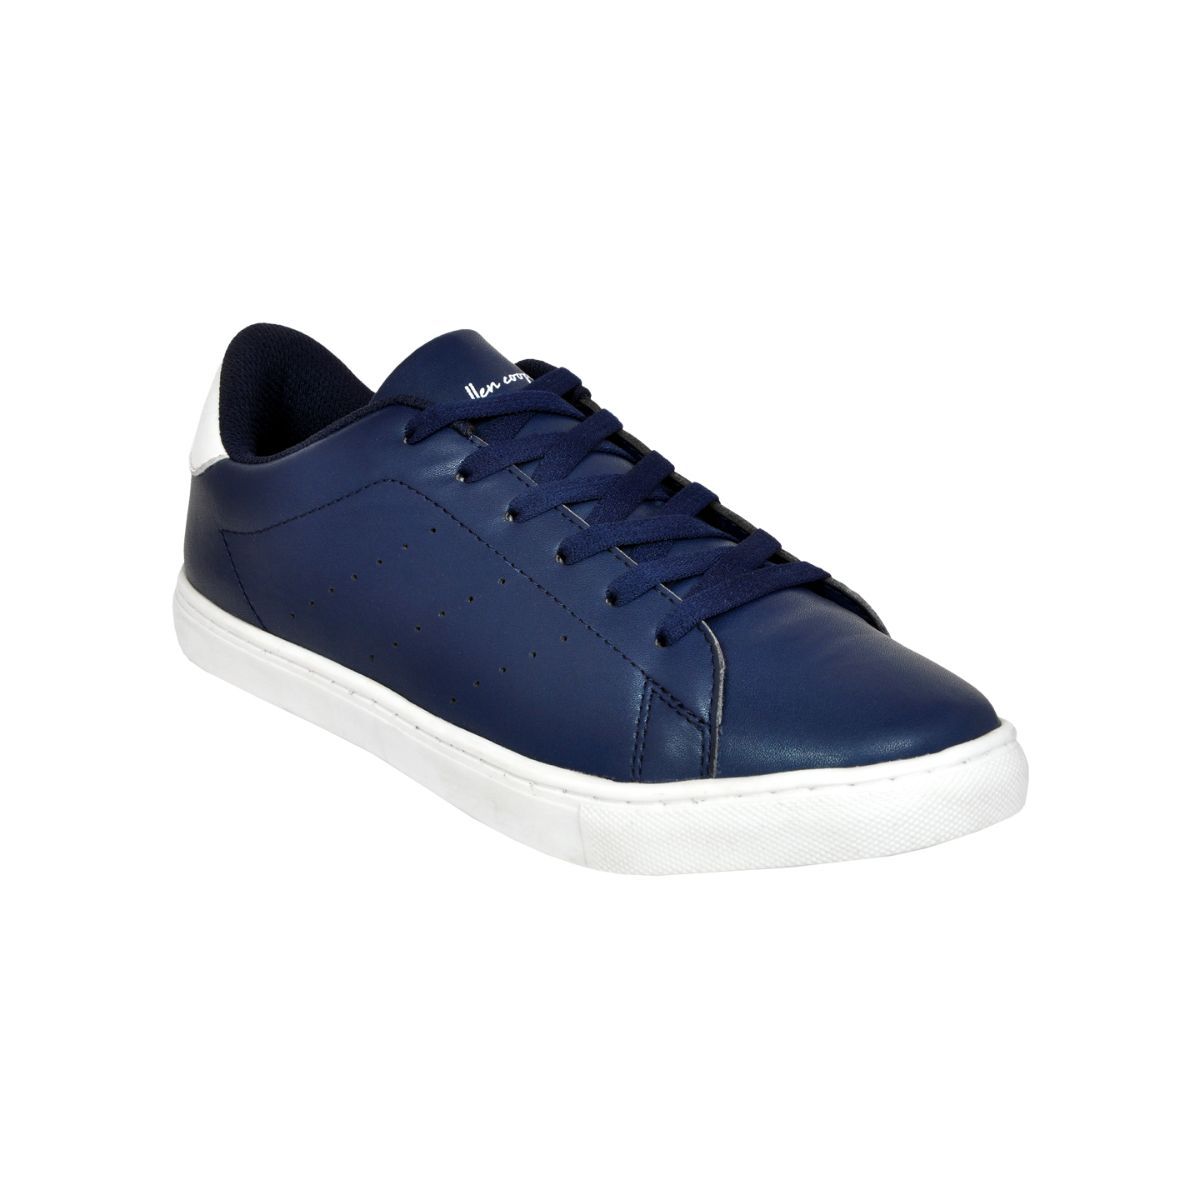 Allen Cooper Navy Blue Sneakers For Men - 6